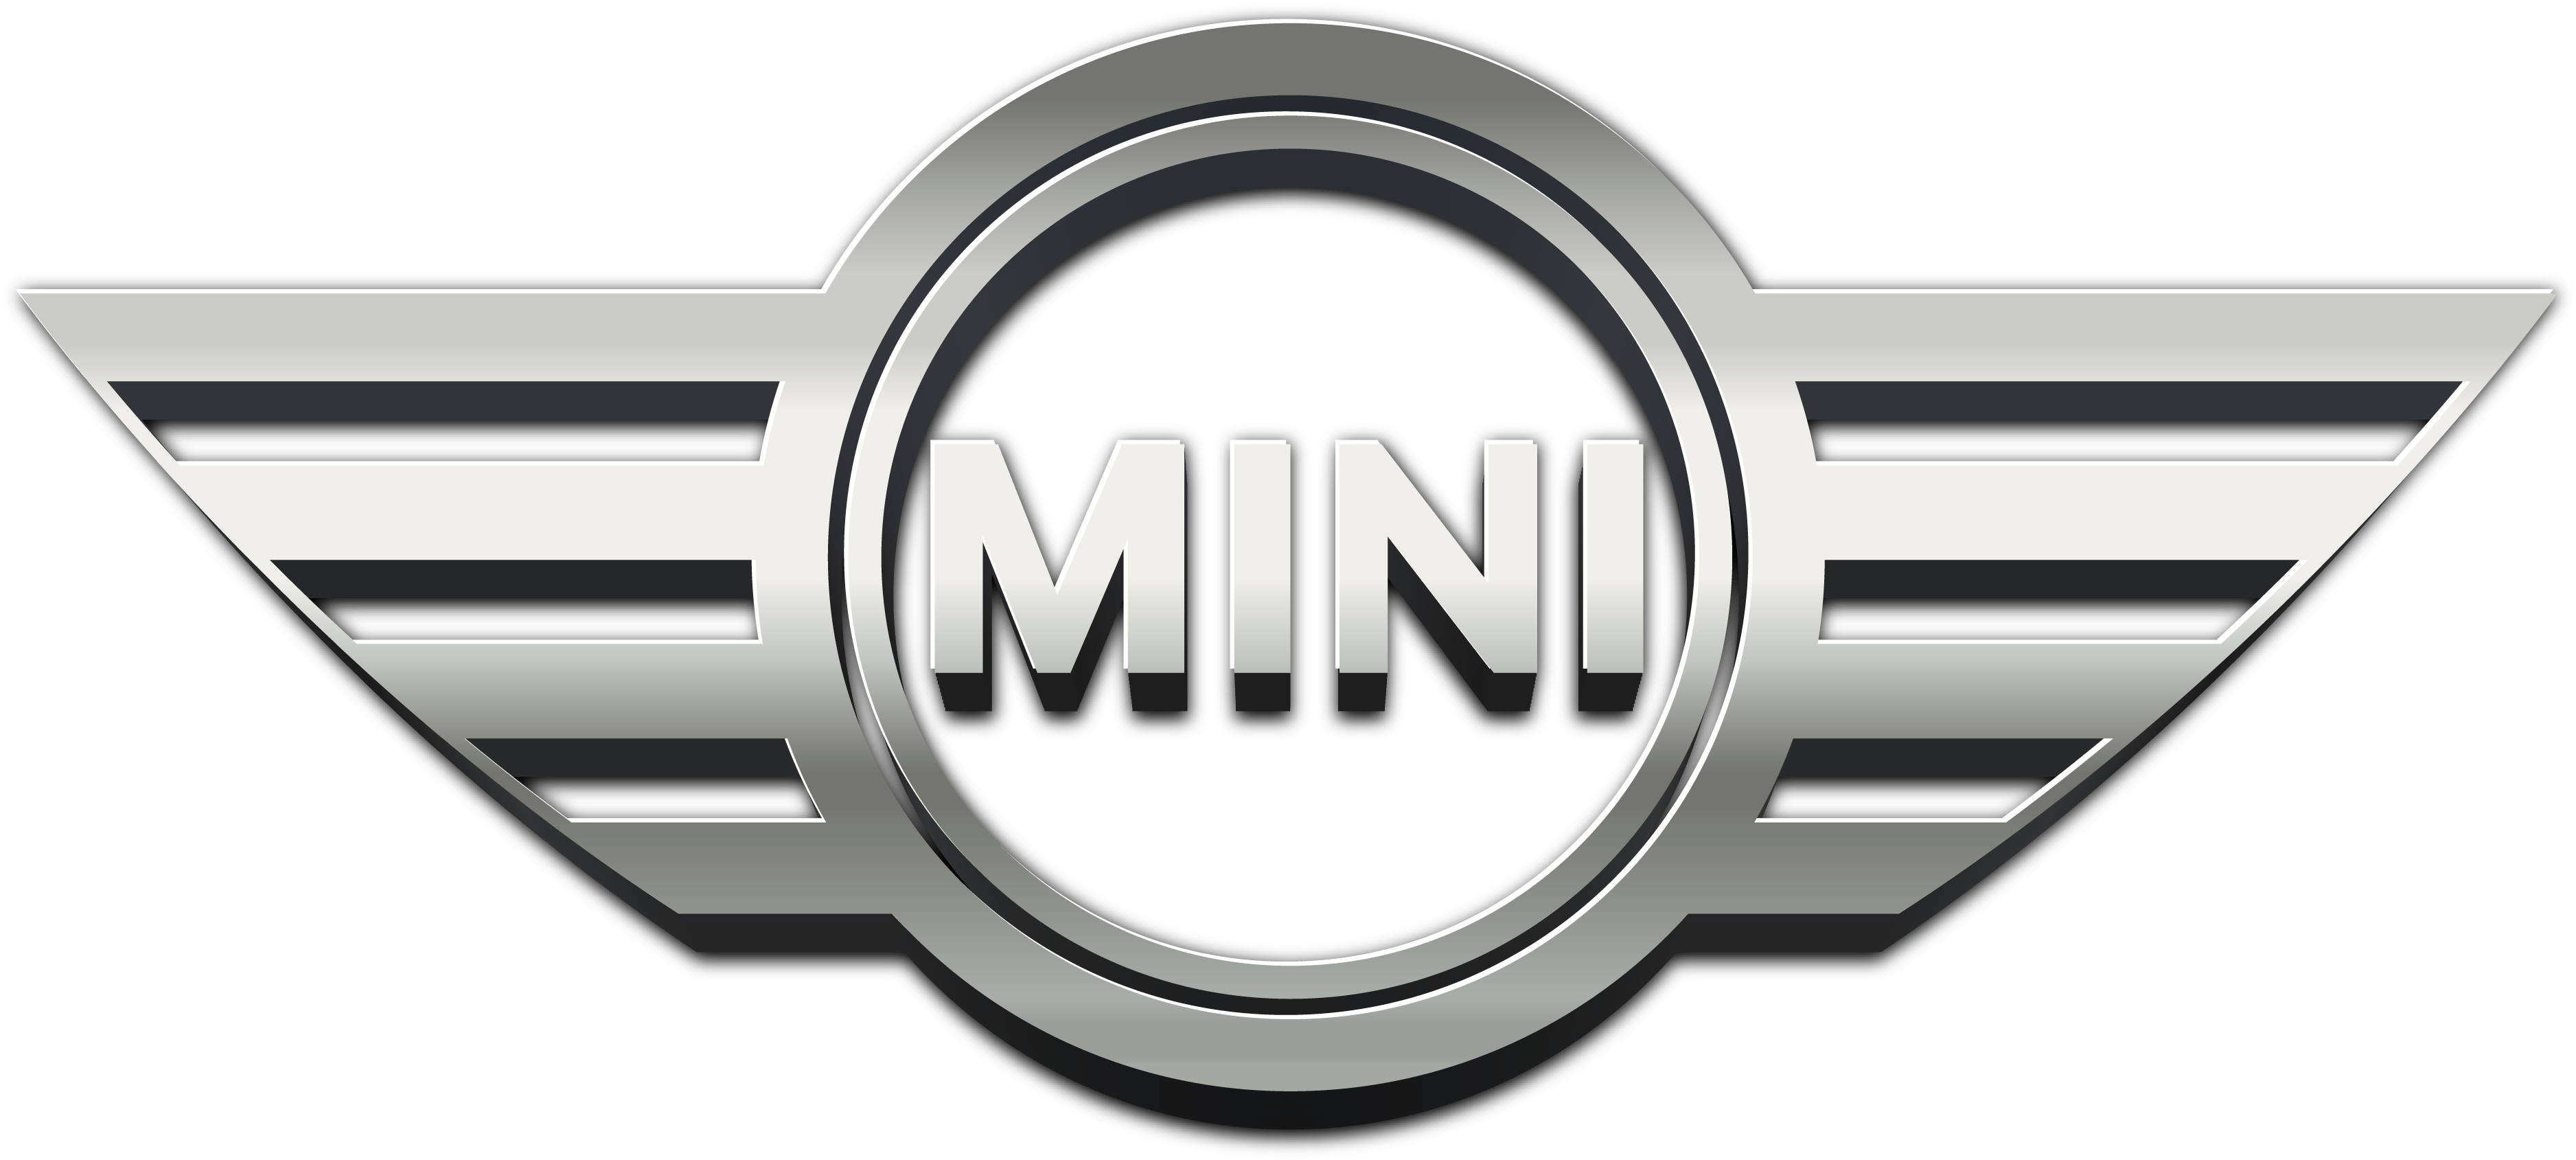 MINI Logo PNG Pic